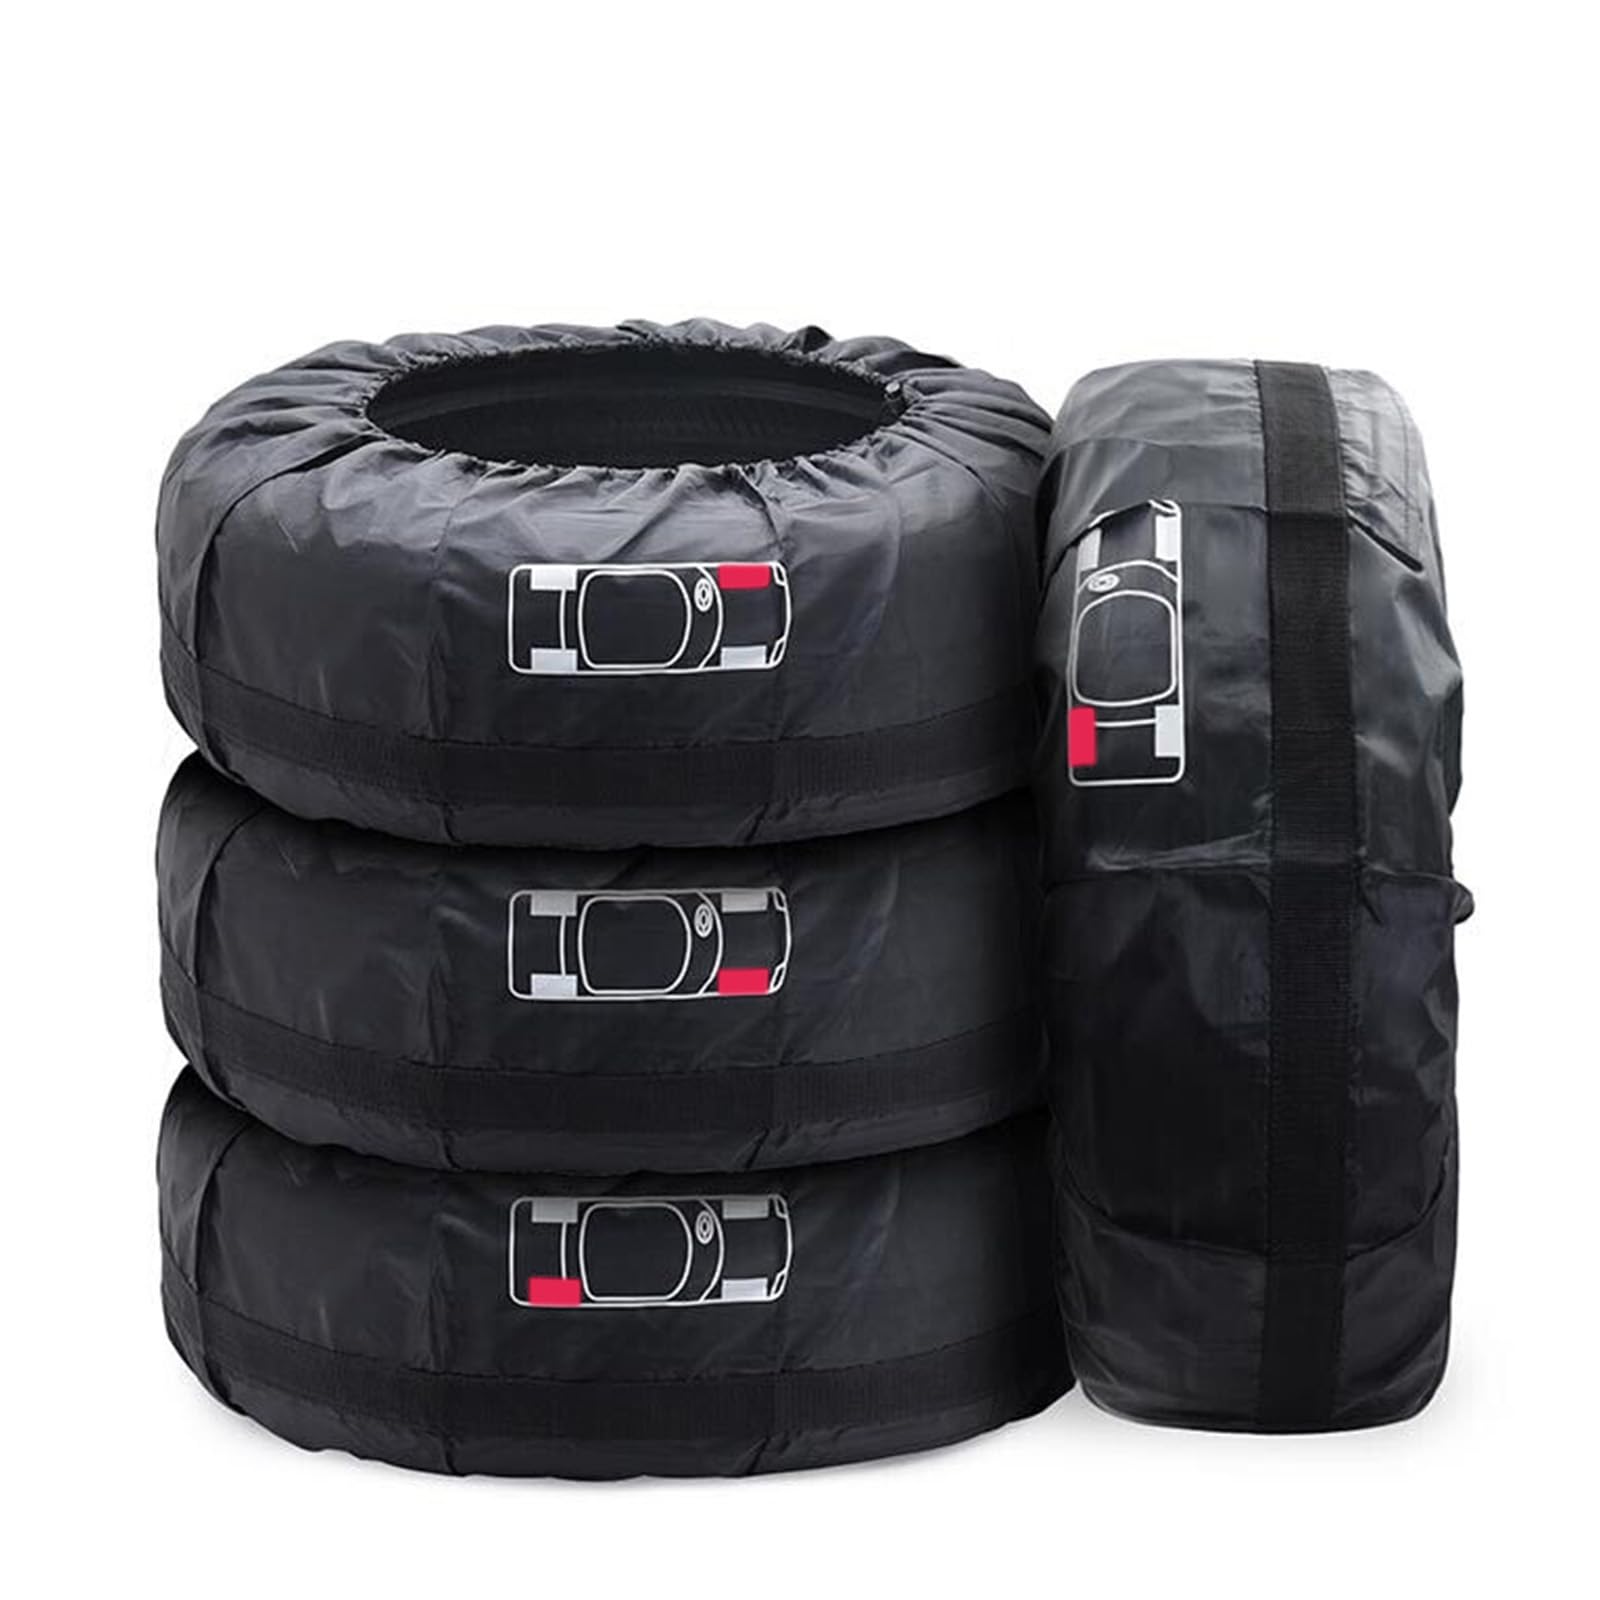 Geloo Tyre Bag Set 16-20 Inch 4 Piece Waterproof Staubdicht Car Tyre Protection Cover Clean Transport and Storage (Durchmesser 80 cm), Schwarz L von Geloo